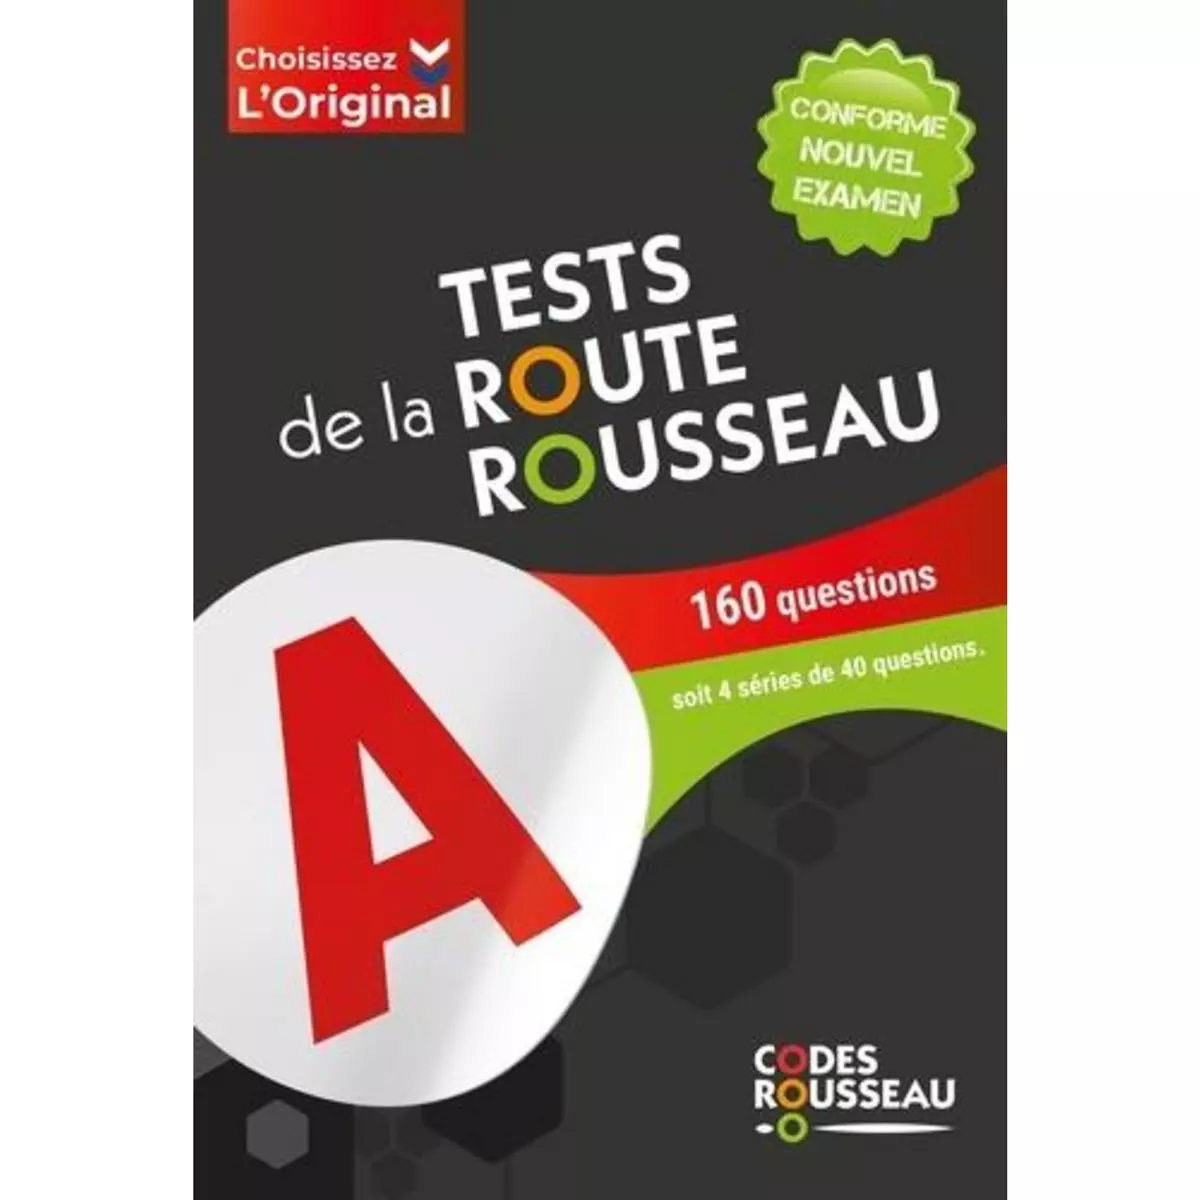  TESTS DE LA ROUTE ROUSSEAU. 160 QUESTIONS SOIT 4 SERIE DE 40 QUESTIONS, EDITION 2024, Codes Rousseau